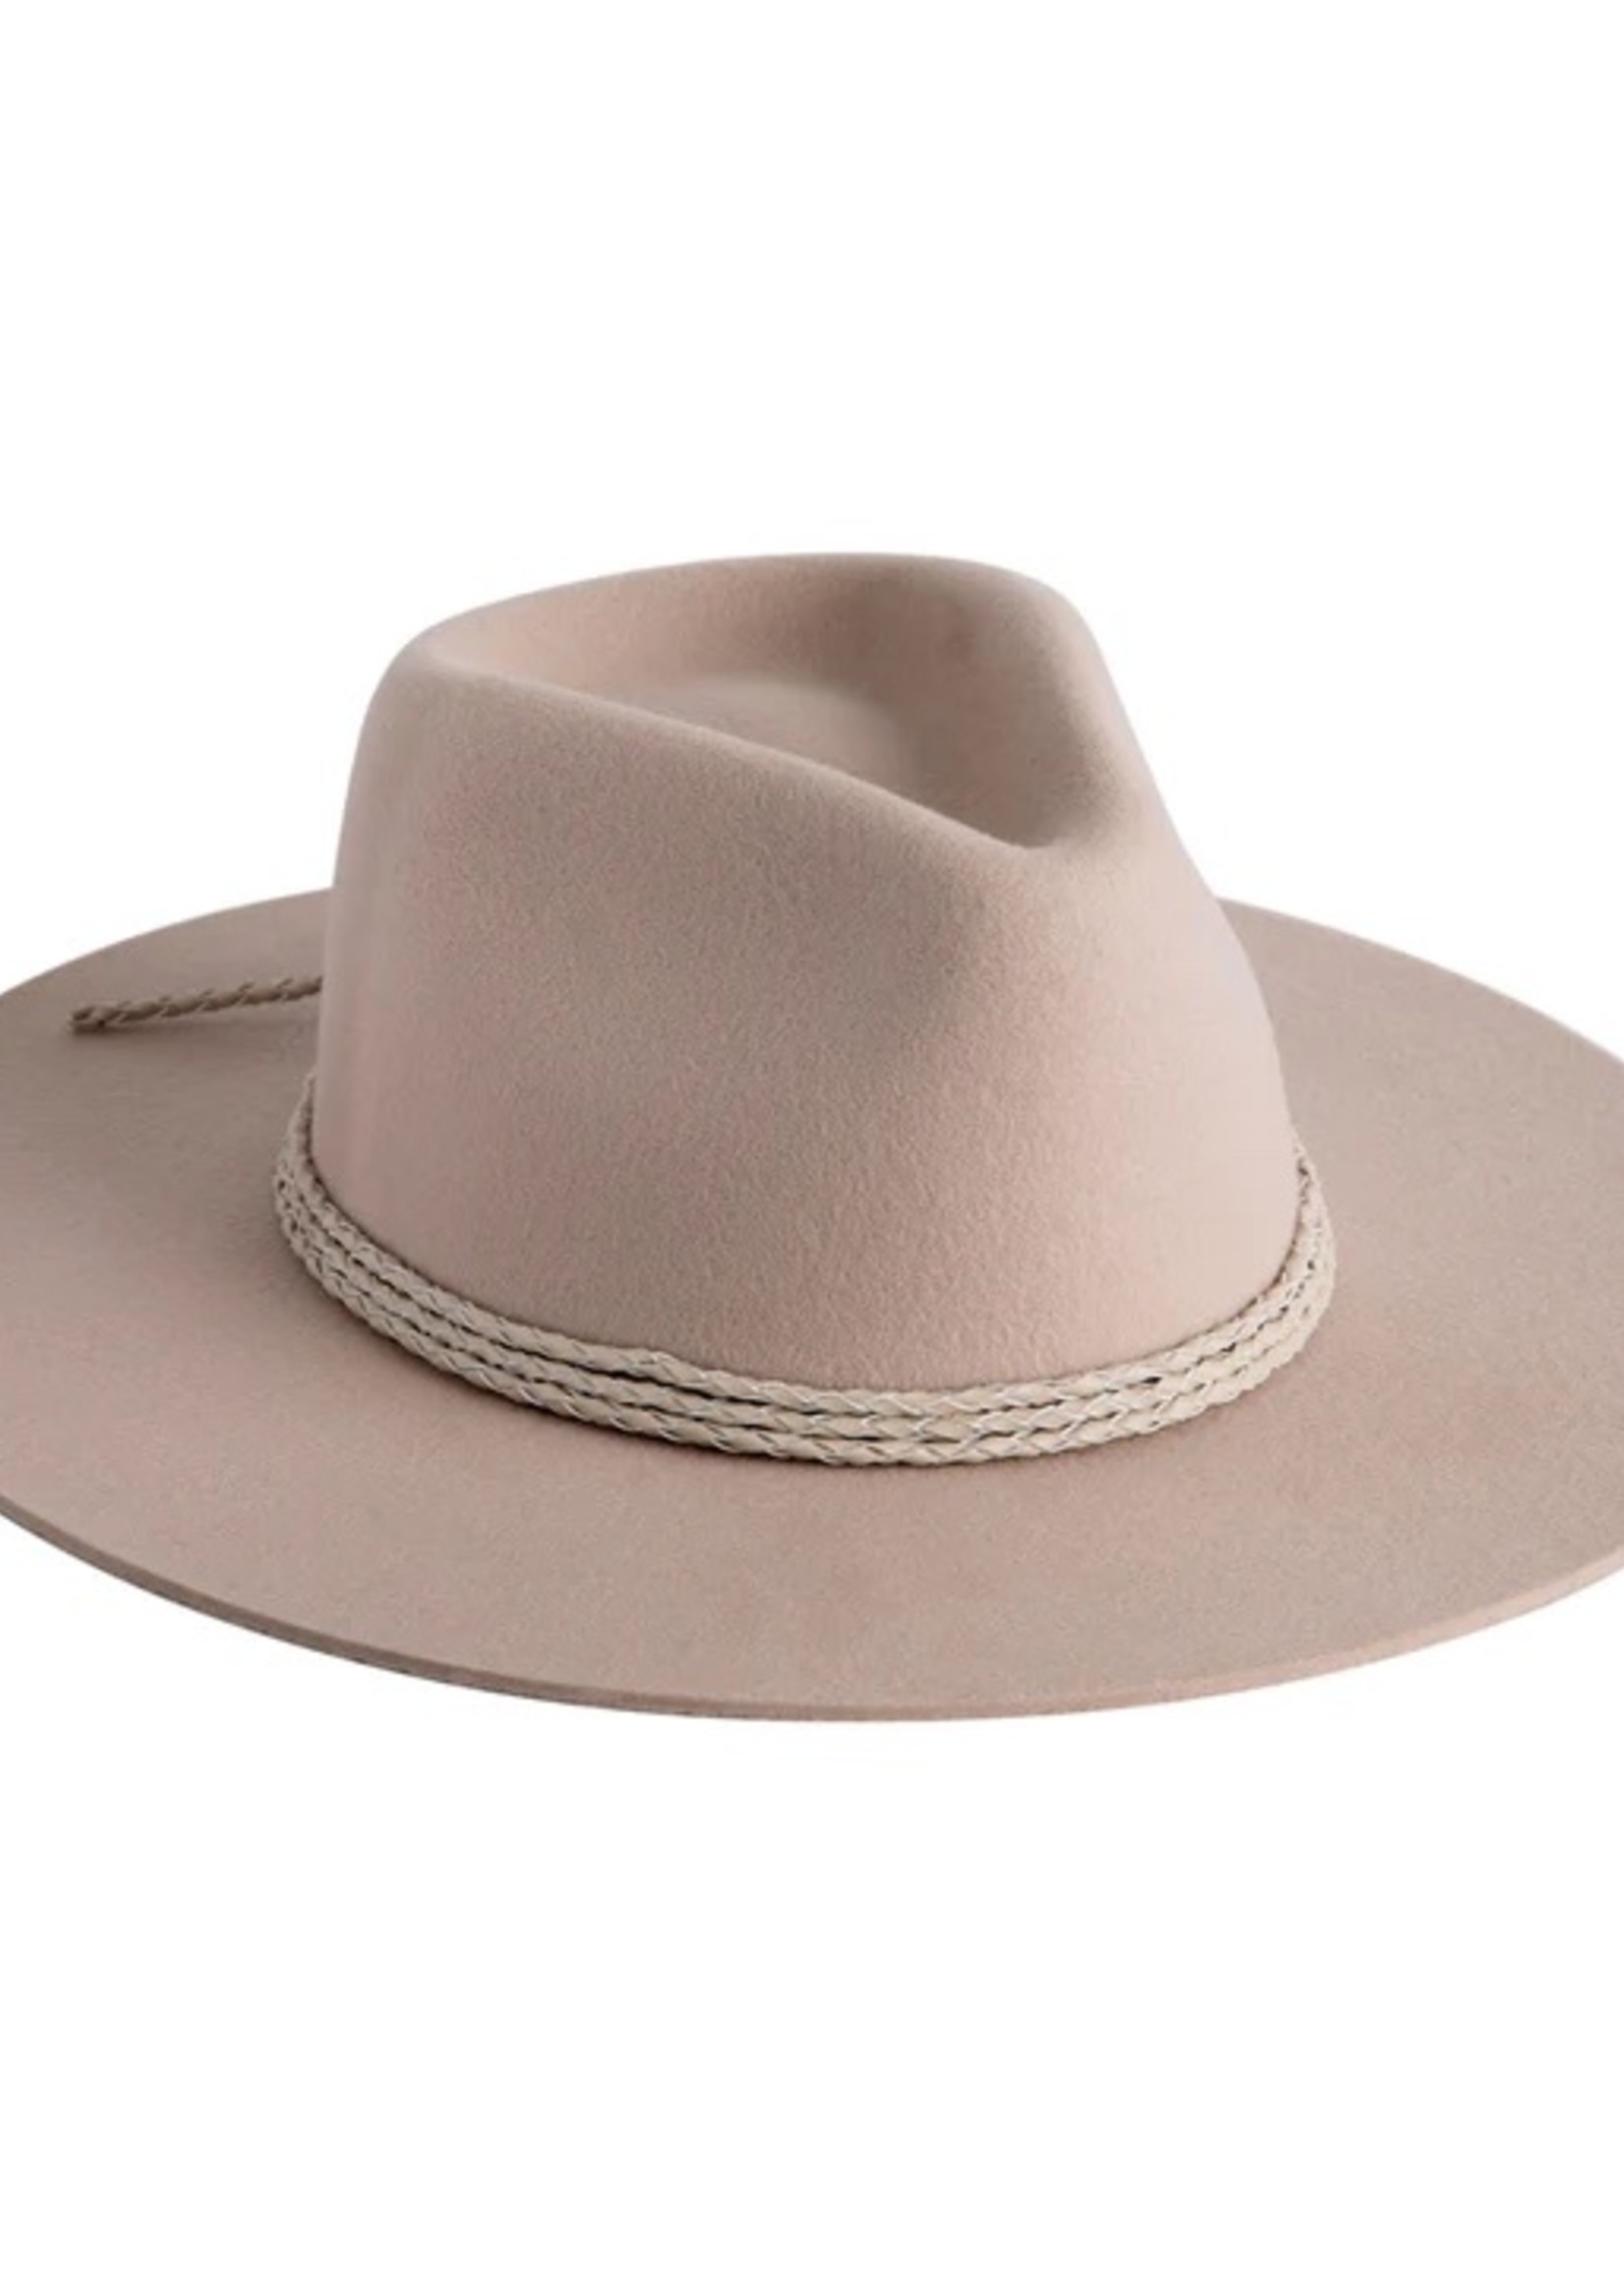 100% Australian Wool Hat